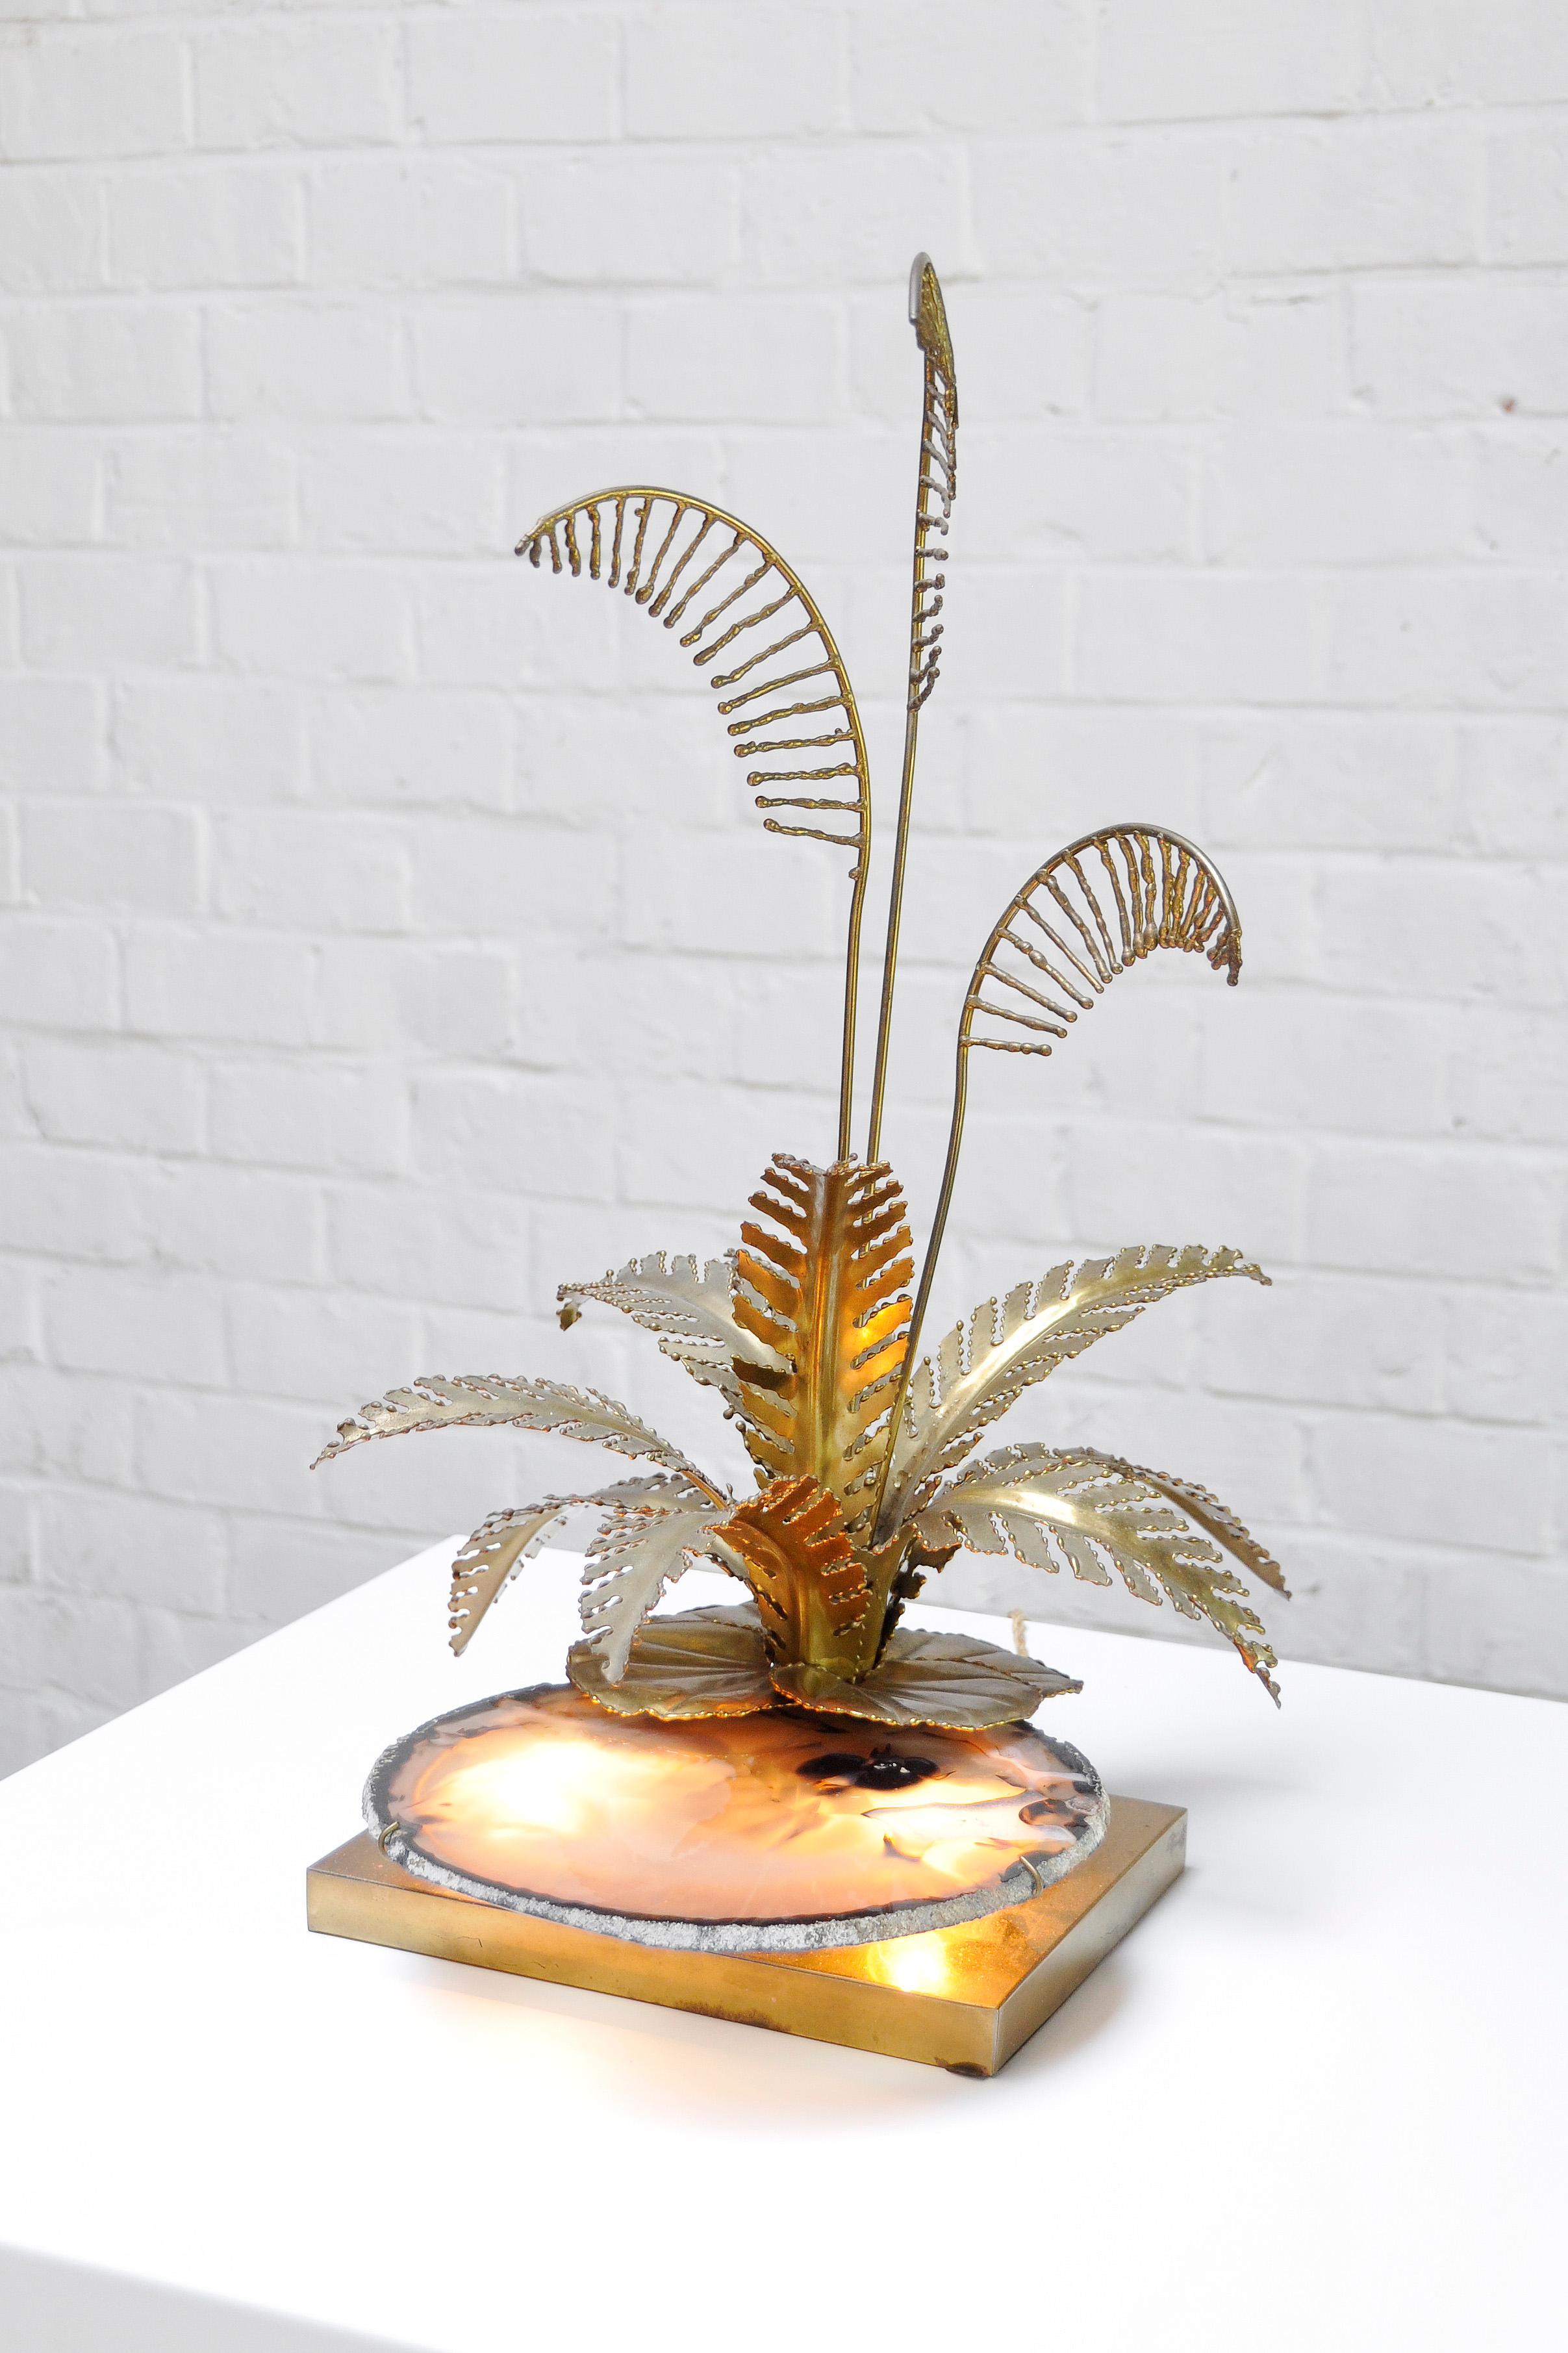 Une lampe de table sculpturale inhabituelle et impressionnante fabriquée par Henri Fernandez dans son atelier dans les années 1970. La lampe présente les formes organiques de tiges et de feuilles réalisées en laiton doré chaud. La pièce maîtresse de